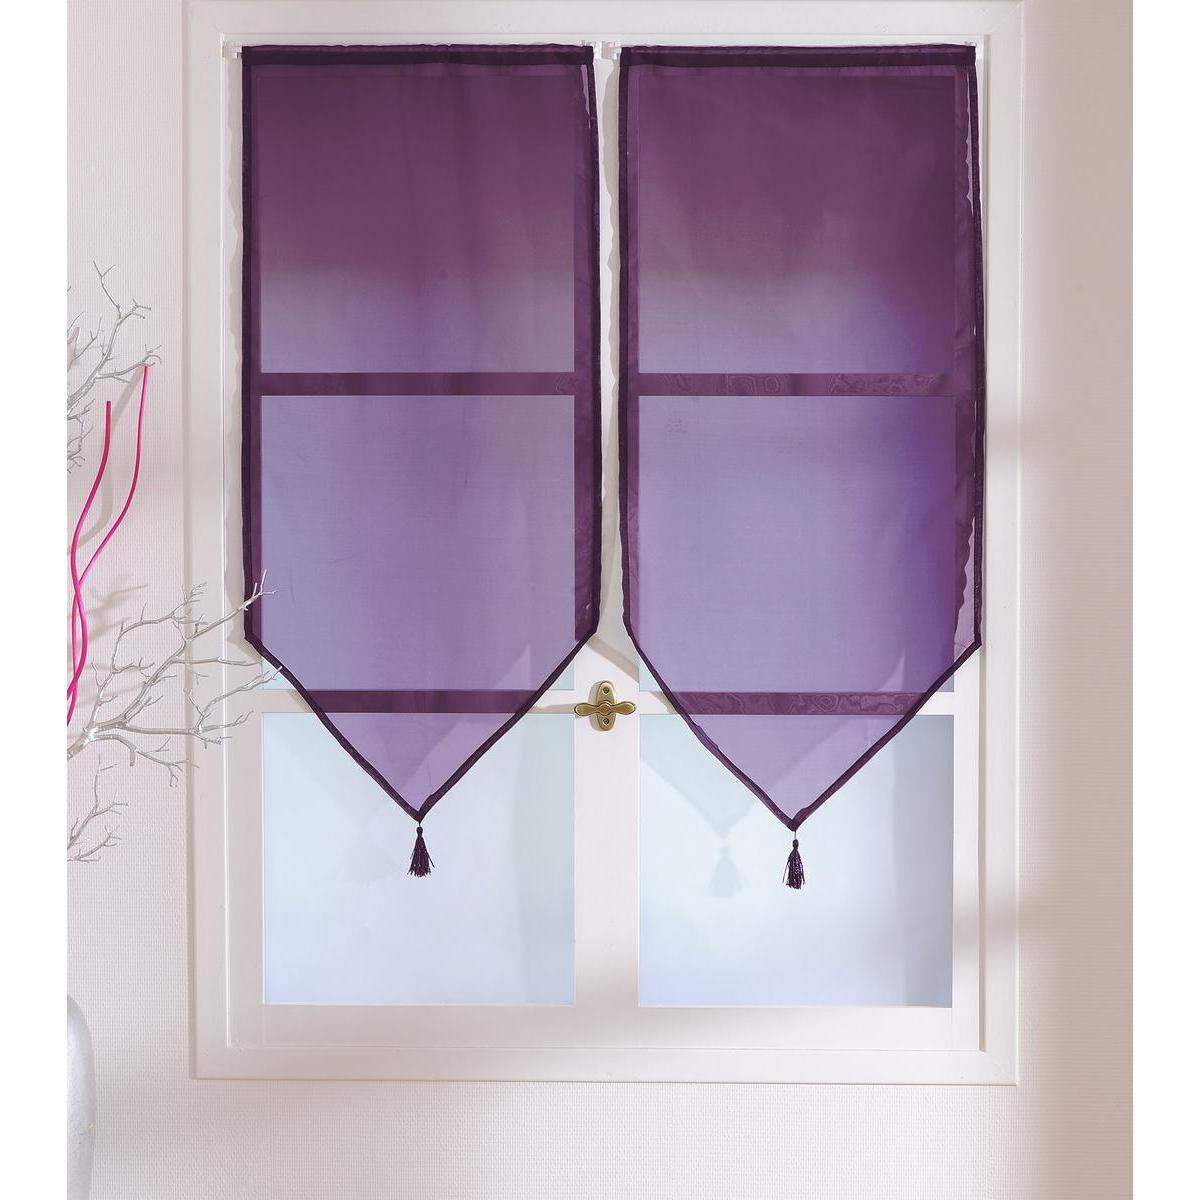 Paire de vitrages - 100% polyester - 60 x 120 cm - Violet aubergine